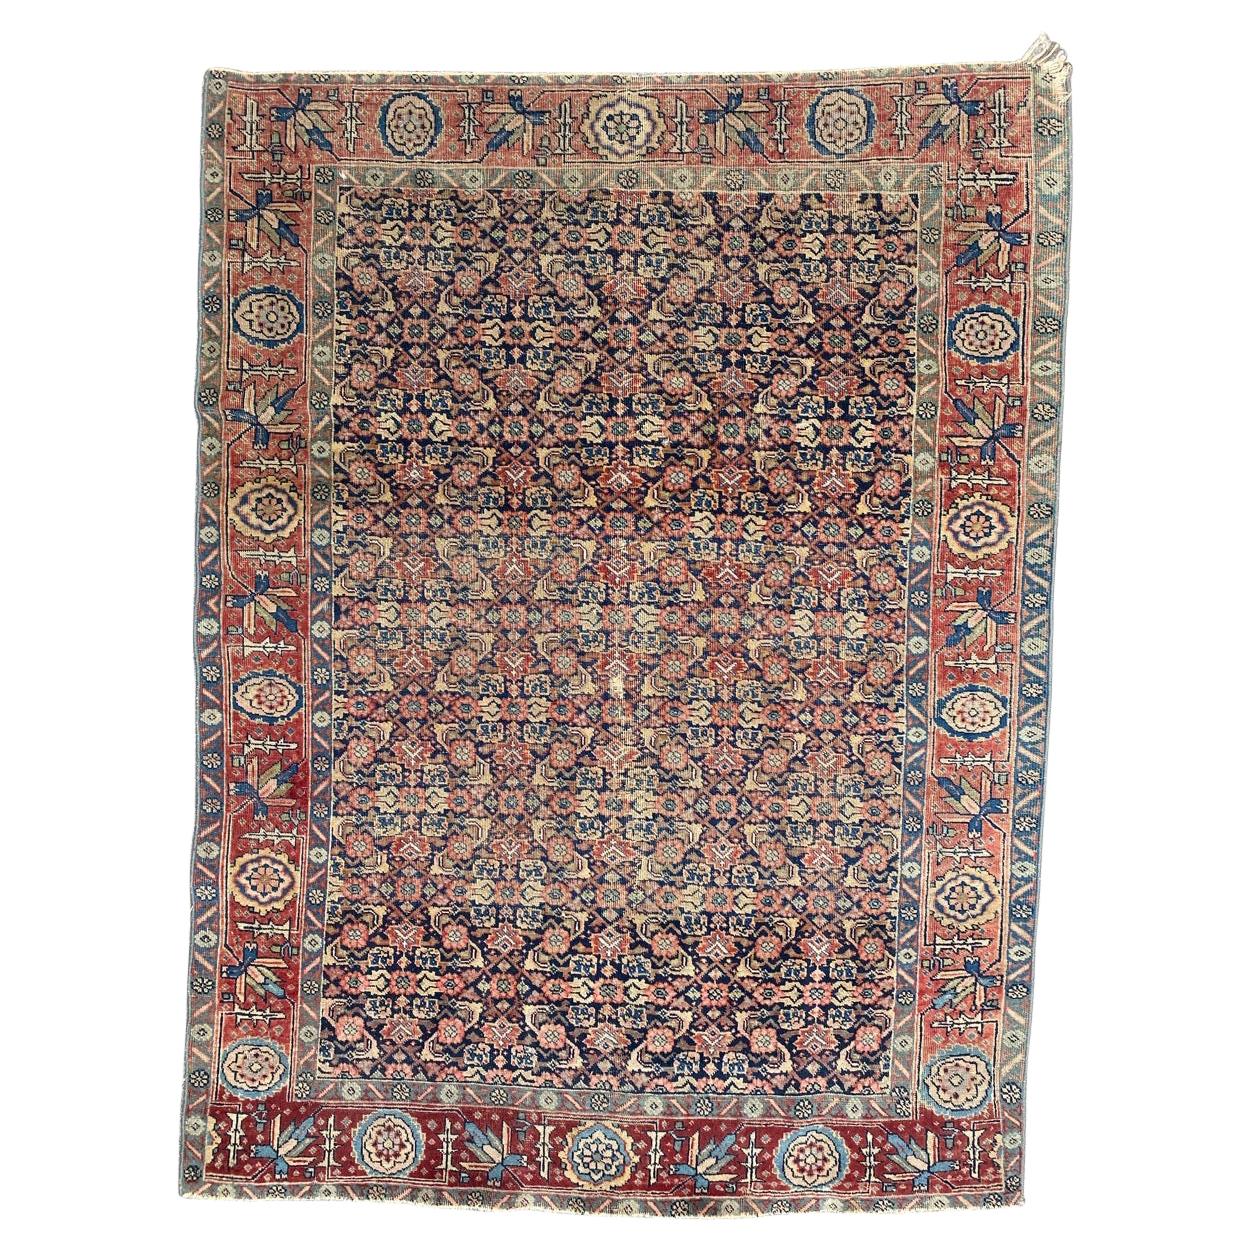 Bobyrug's Beautiful Antique Tabriz Rug (tapis ancien de Tabriz)